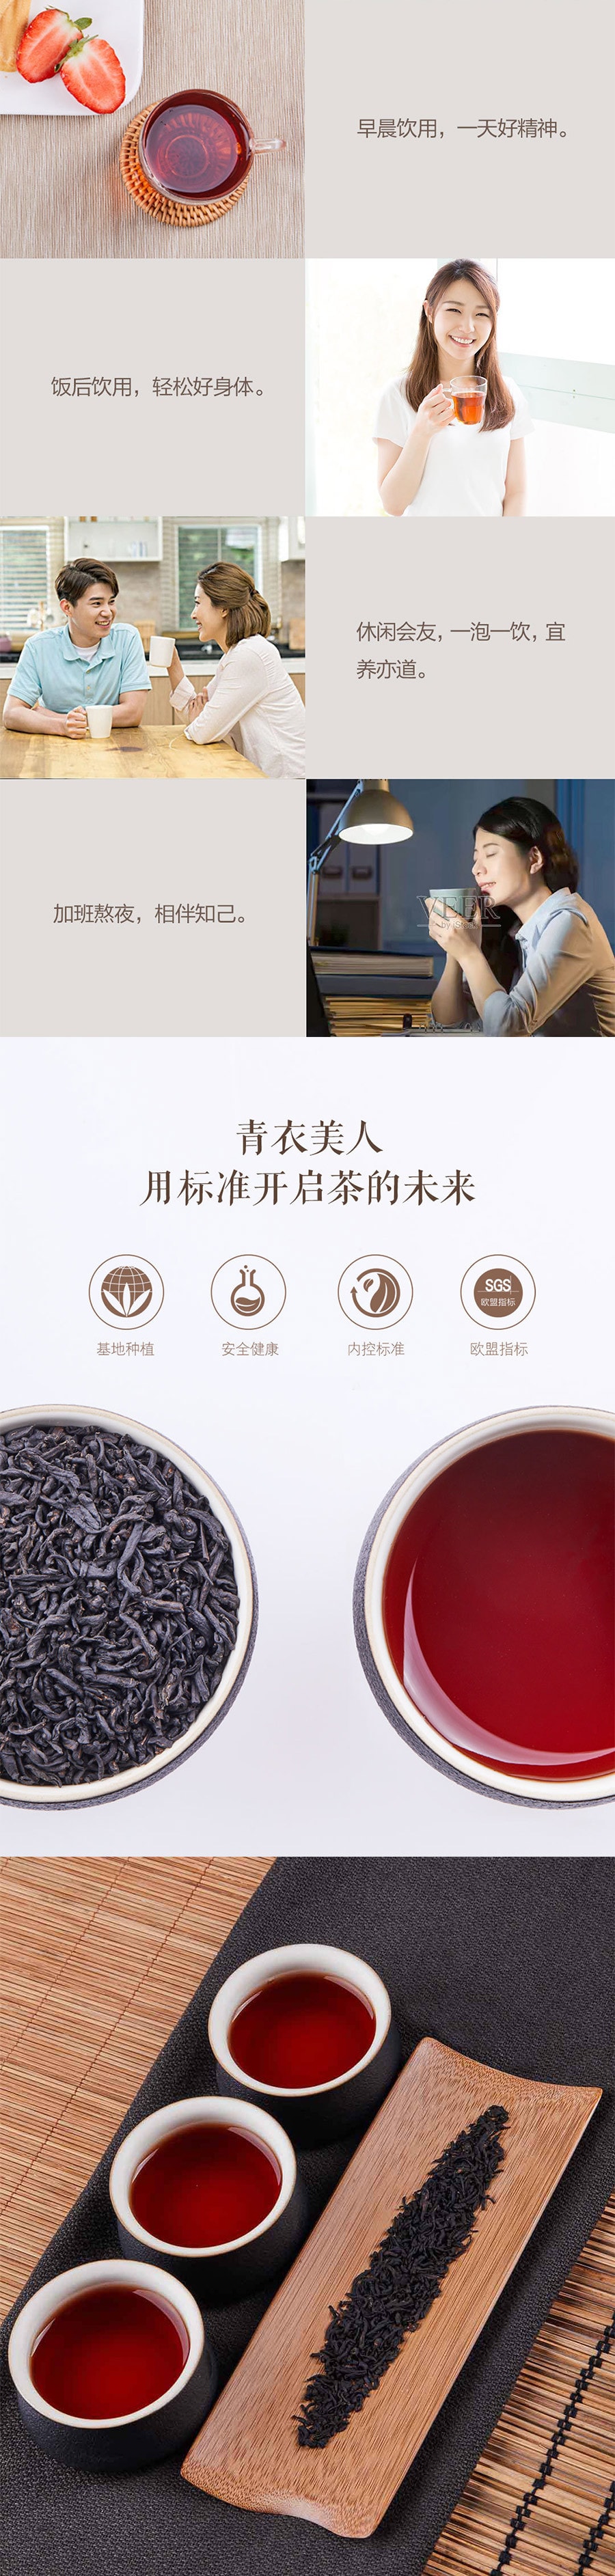 【中国直邮】小米有品青衣美人印象山水系列 ·1号黑茶108g